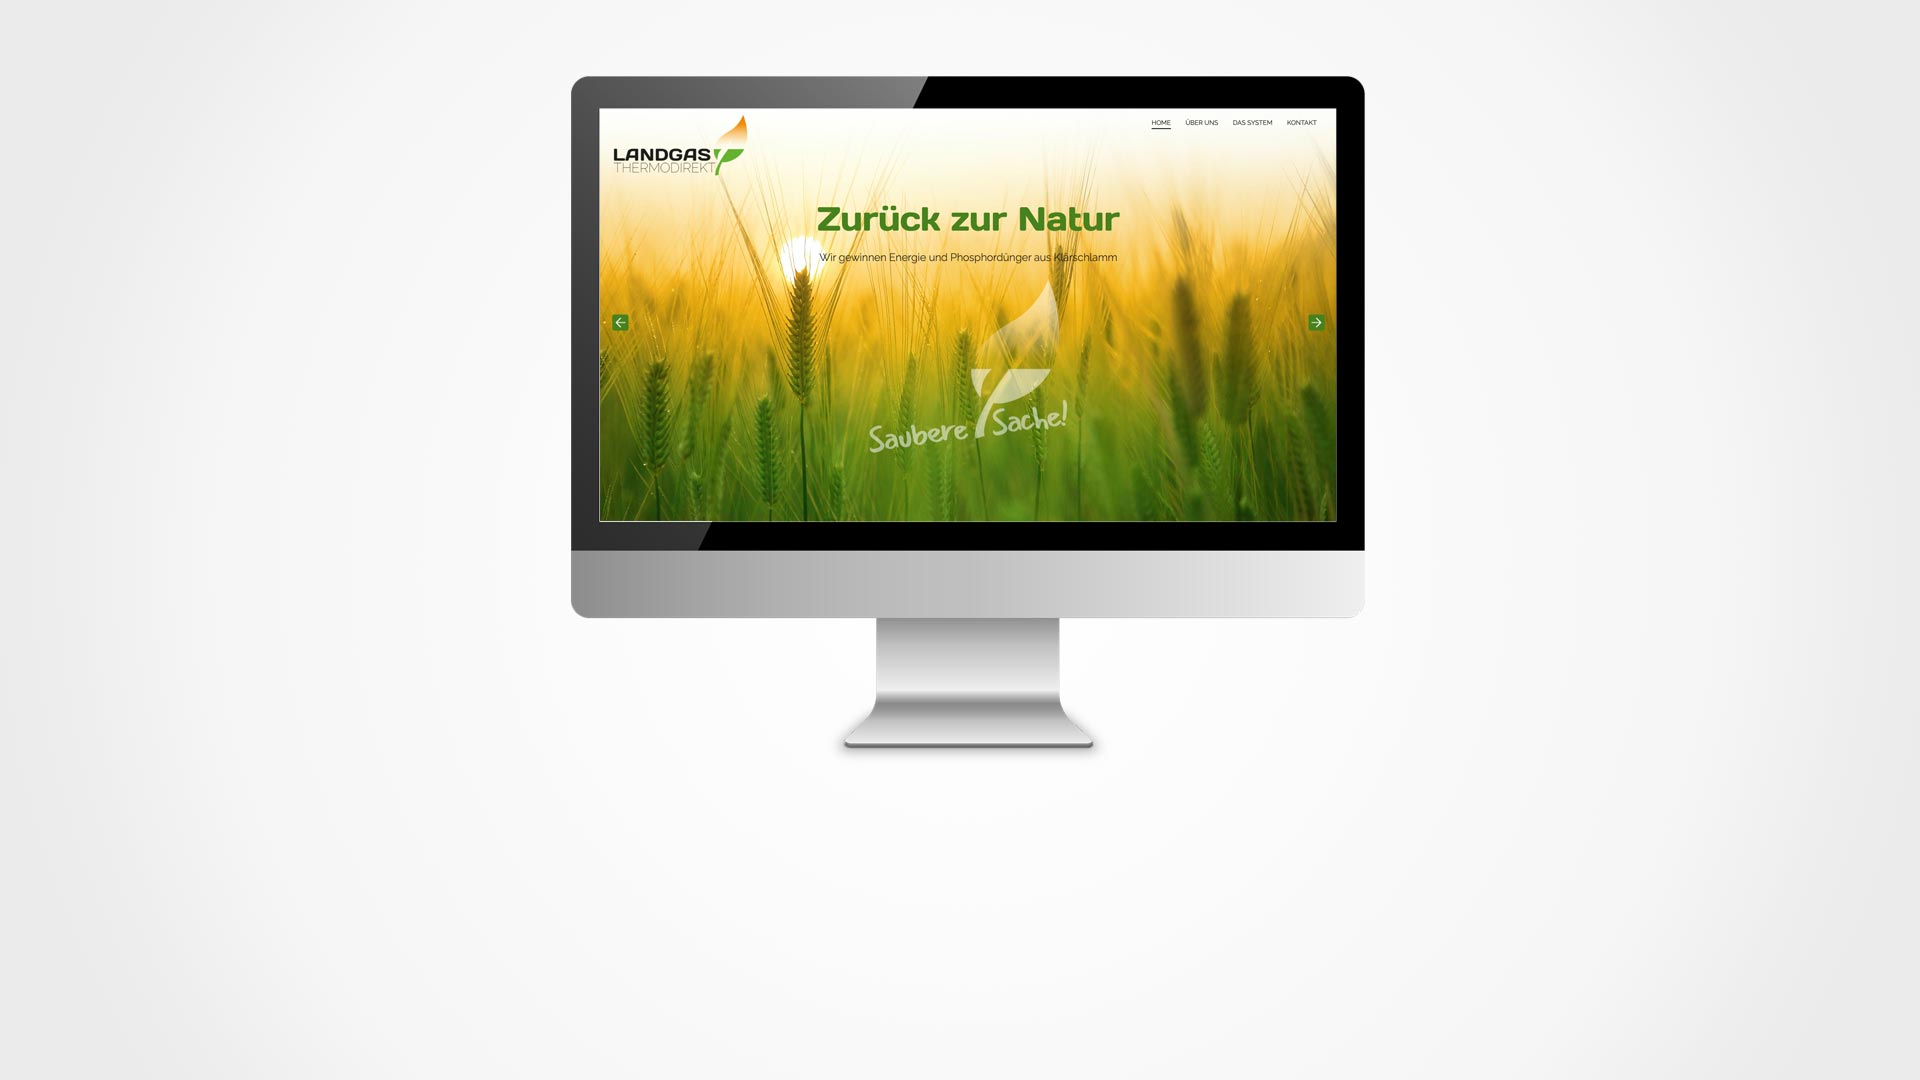 Website Landgas Thermodirekt